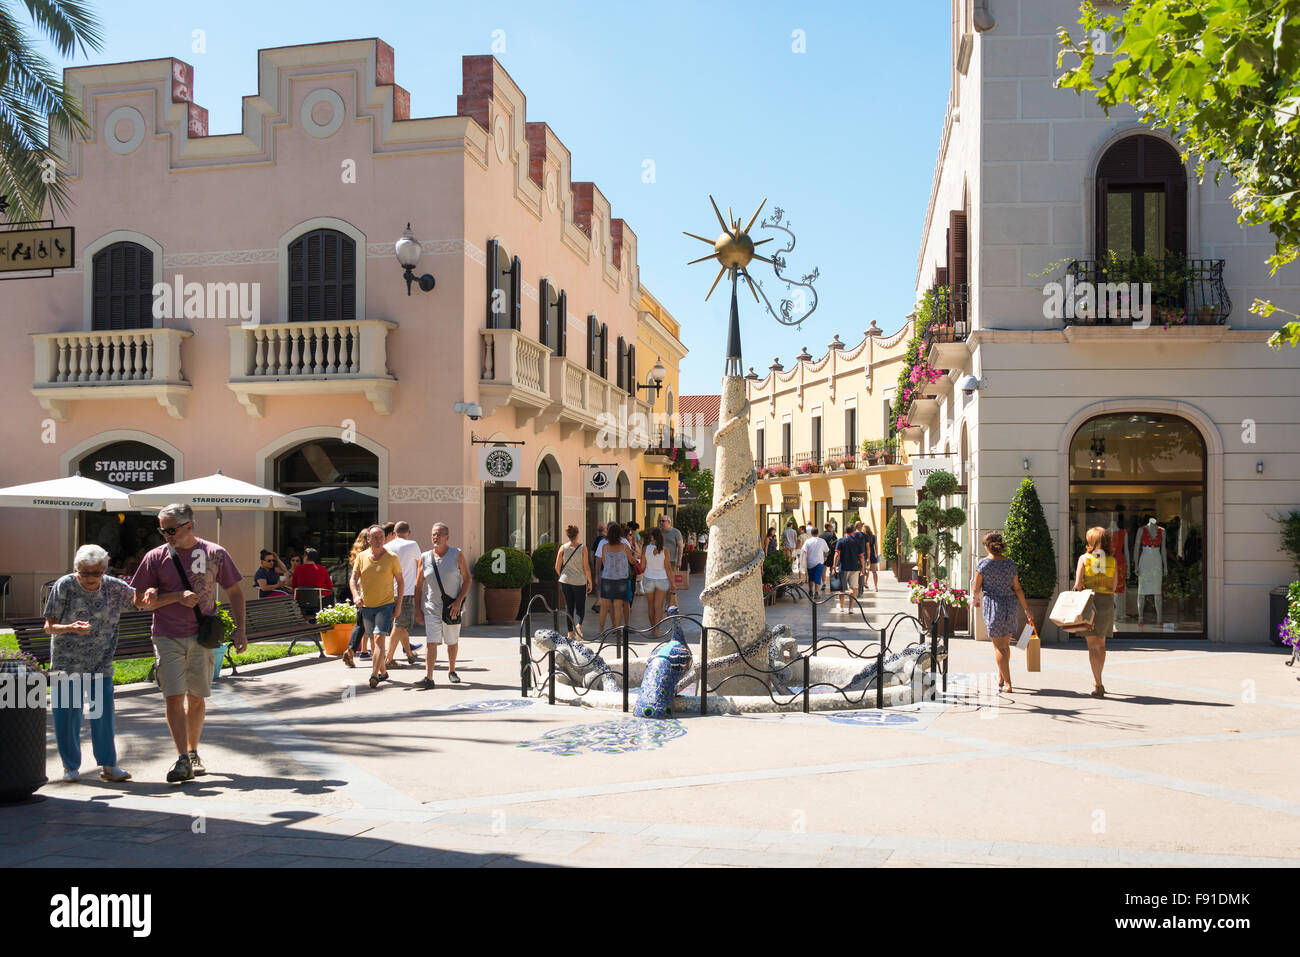 Shopping centre mall spain fotografías e imágenes de alta resolución - Alamy